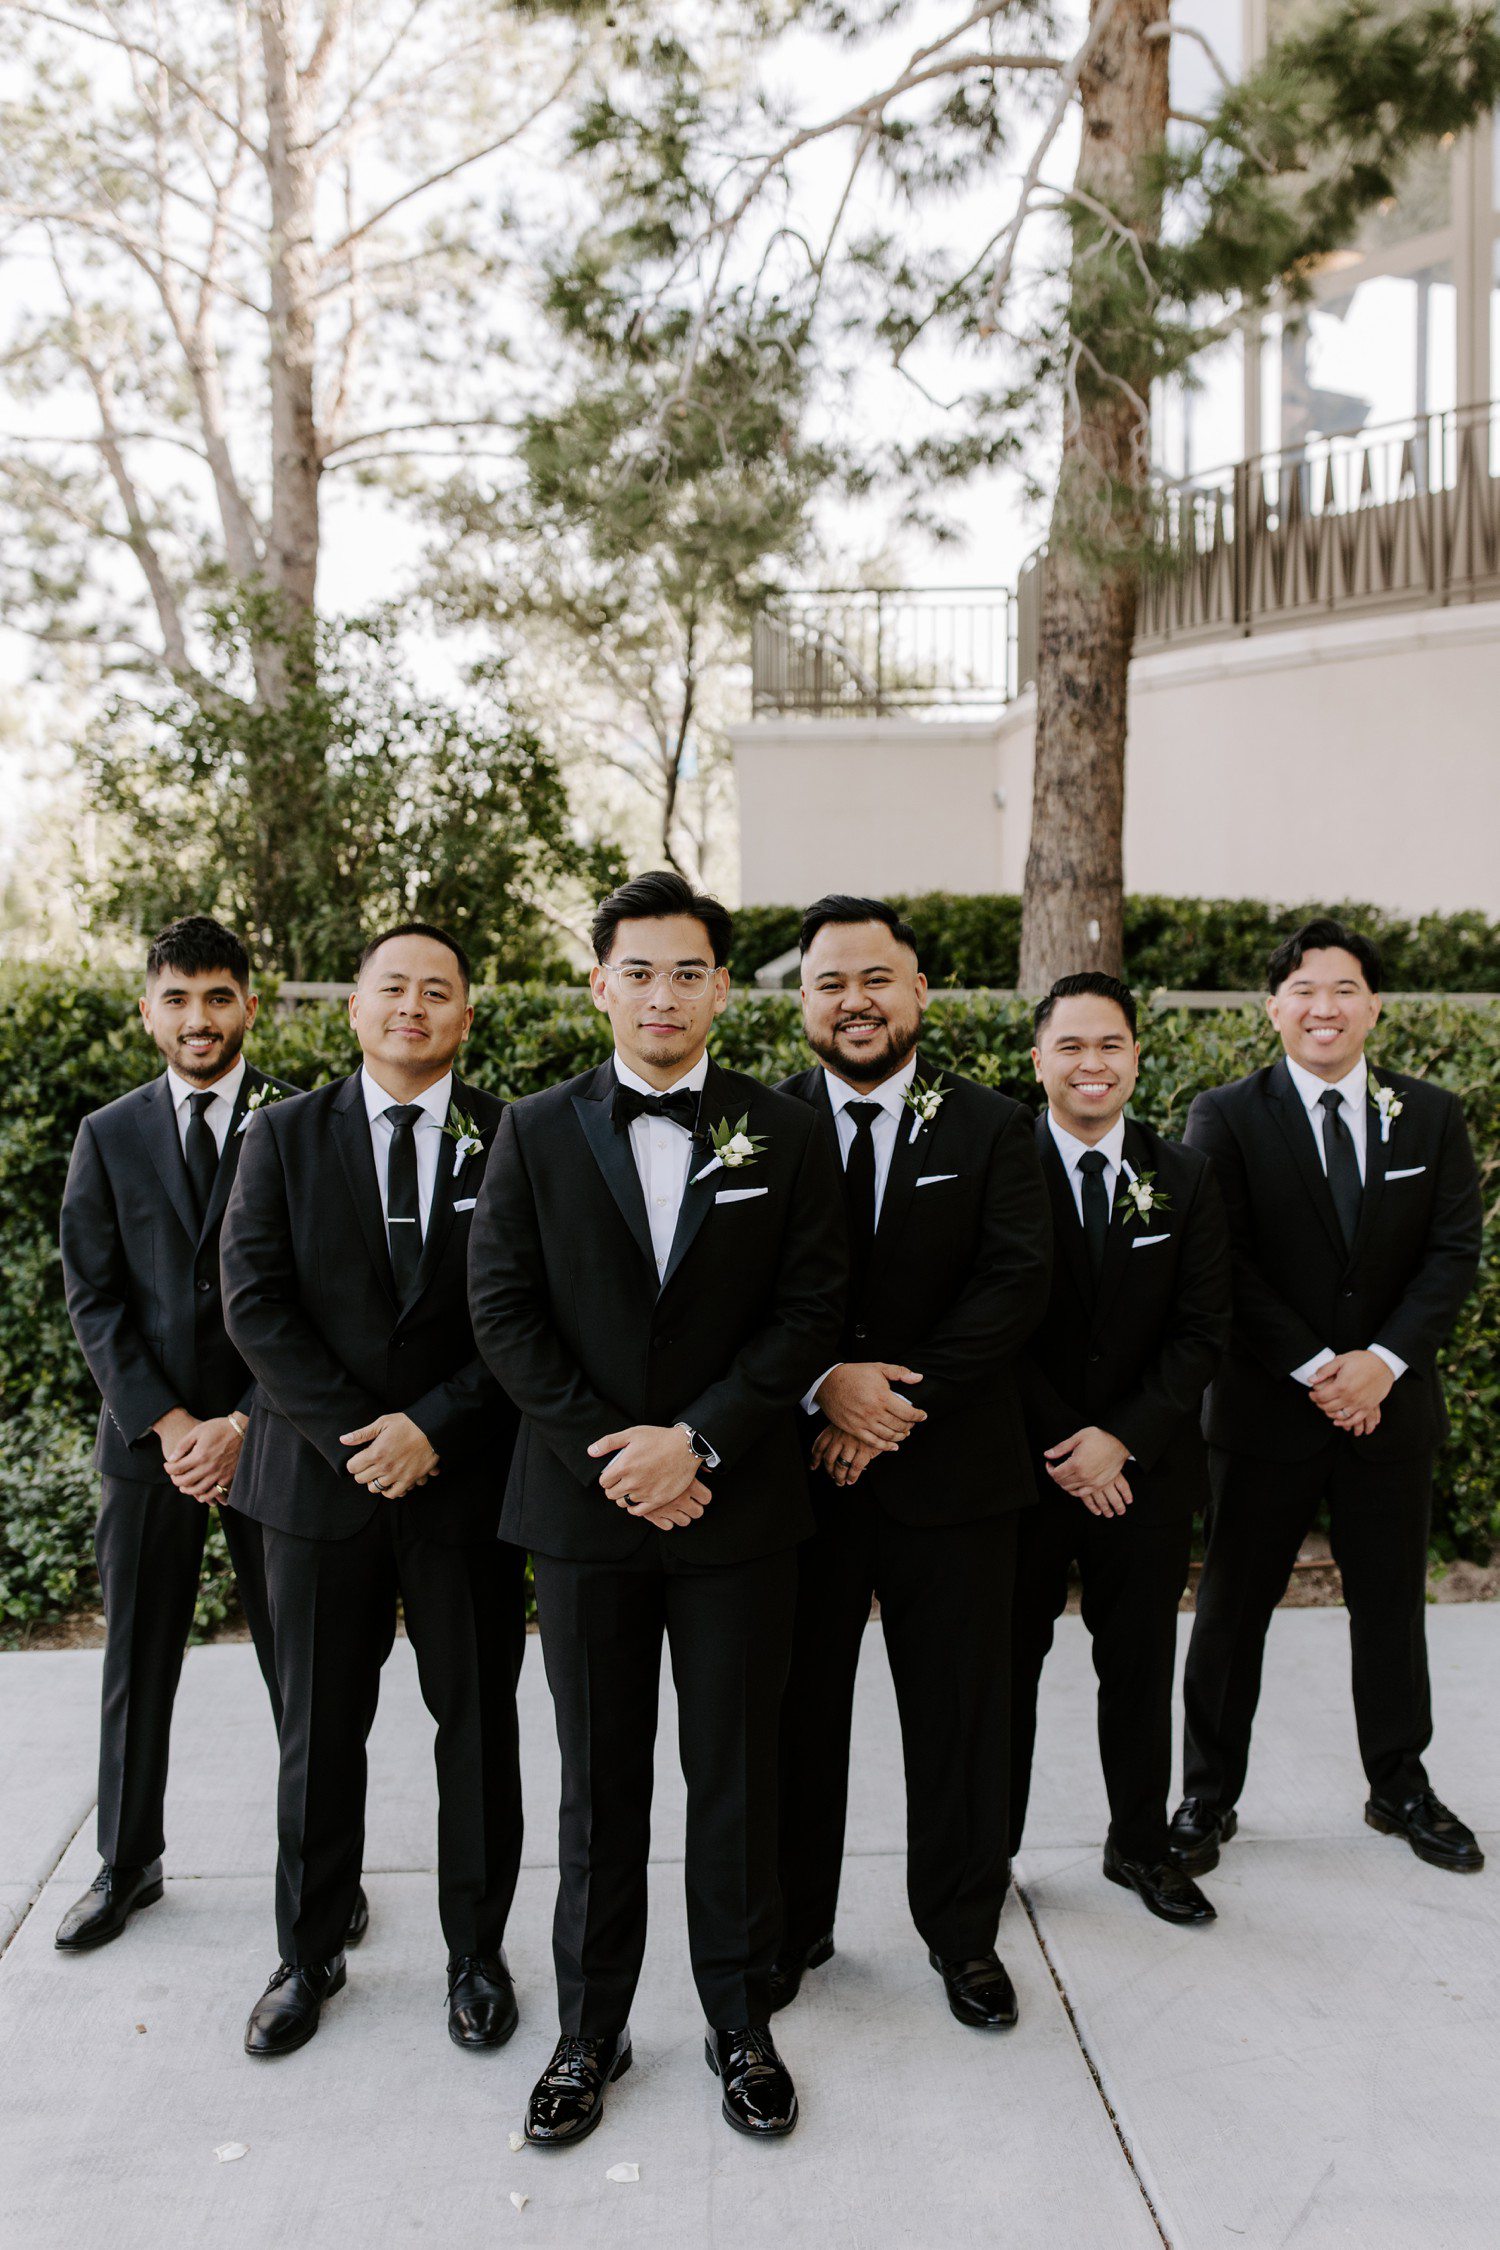 Groom and groomsmen photos in Las Vegas.